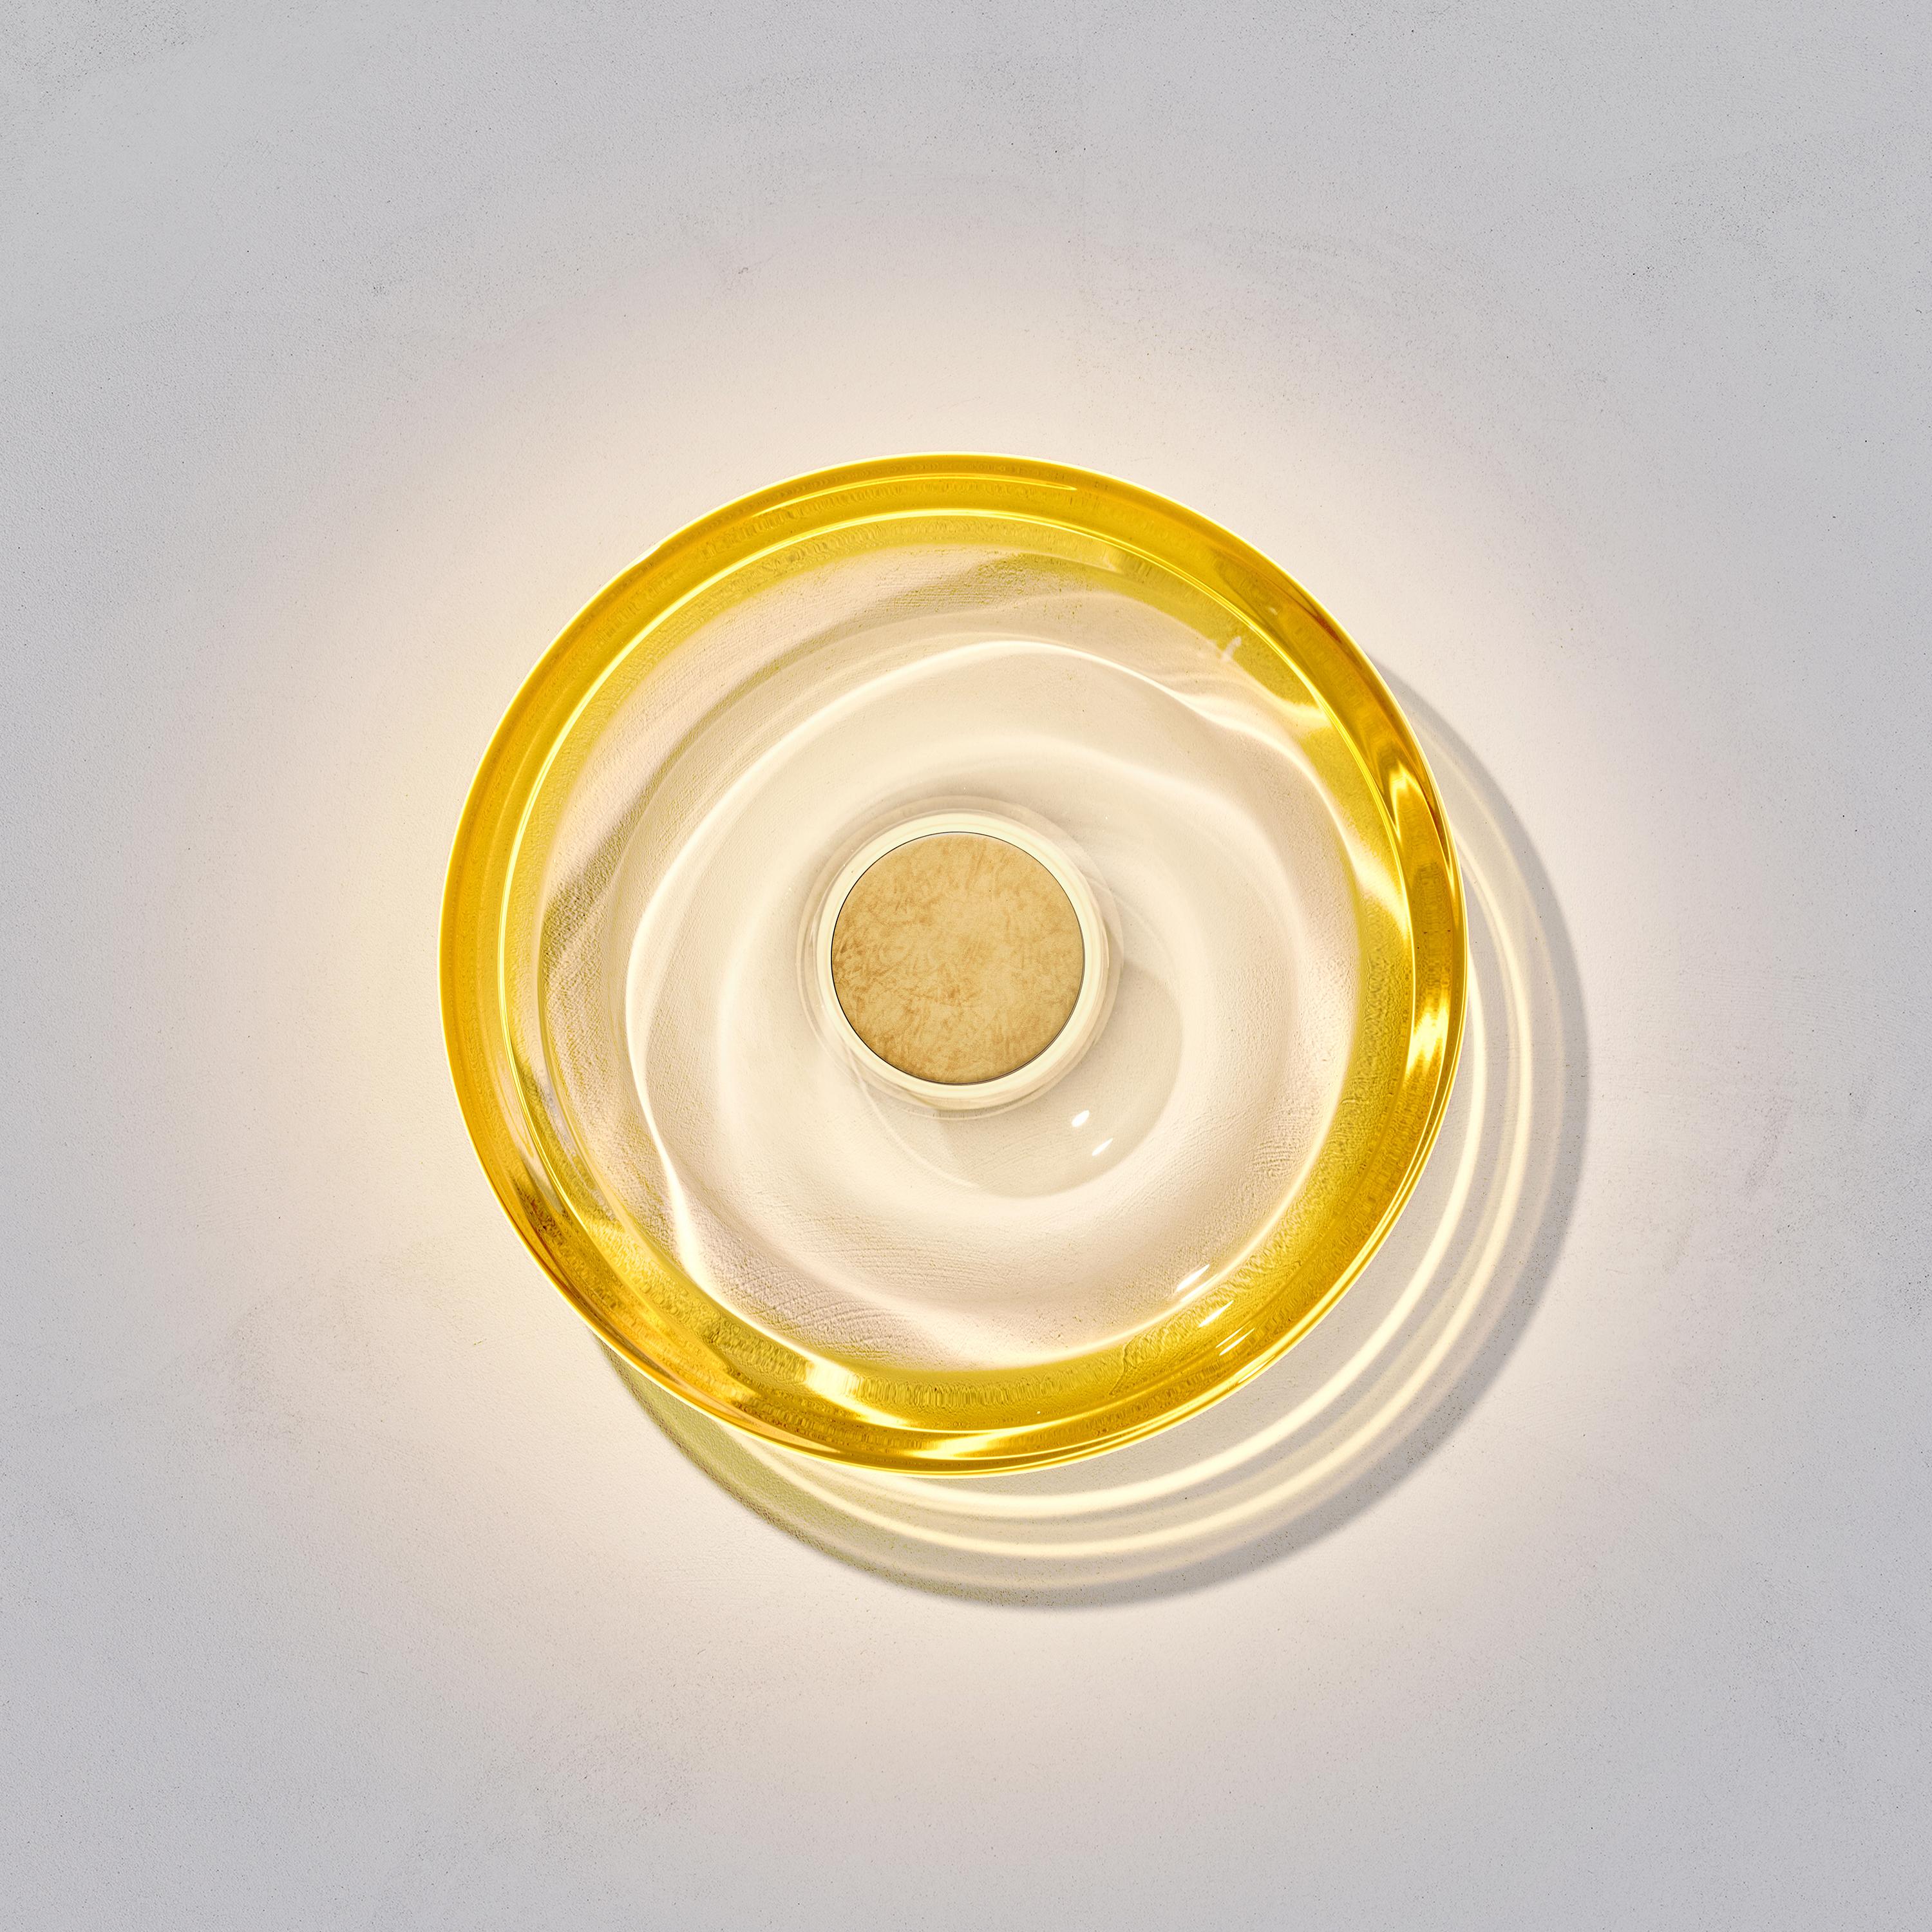 El aplique Liquid Amber ha sido diseñado por la artista internacional de la iluminación Eva Menz. Inspirado en las ondulaciones circulares y los reflejos que se crean en el agua, el cristal amarillo degradado se transforma en un bello candelabro